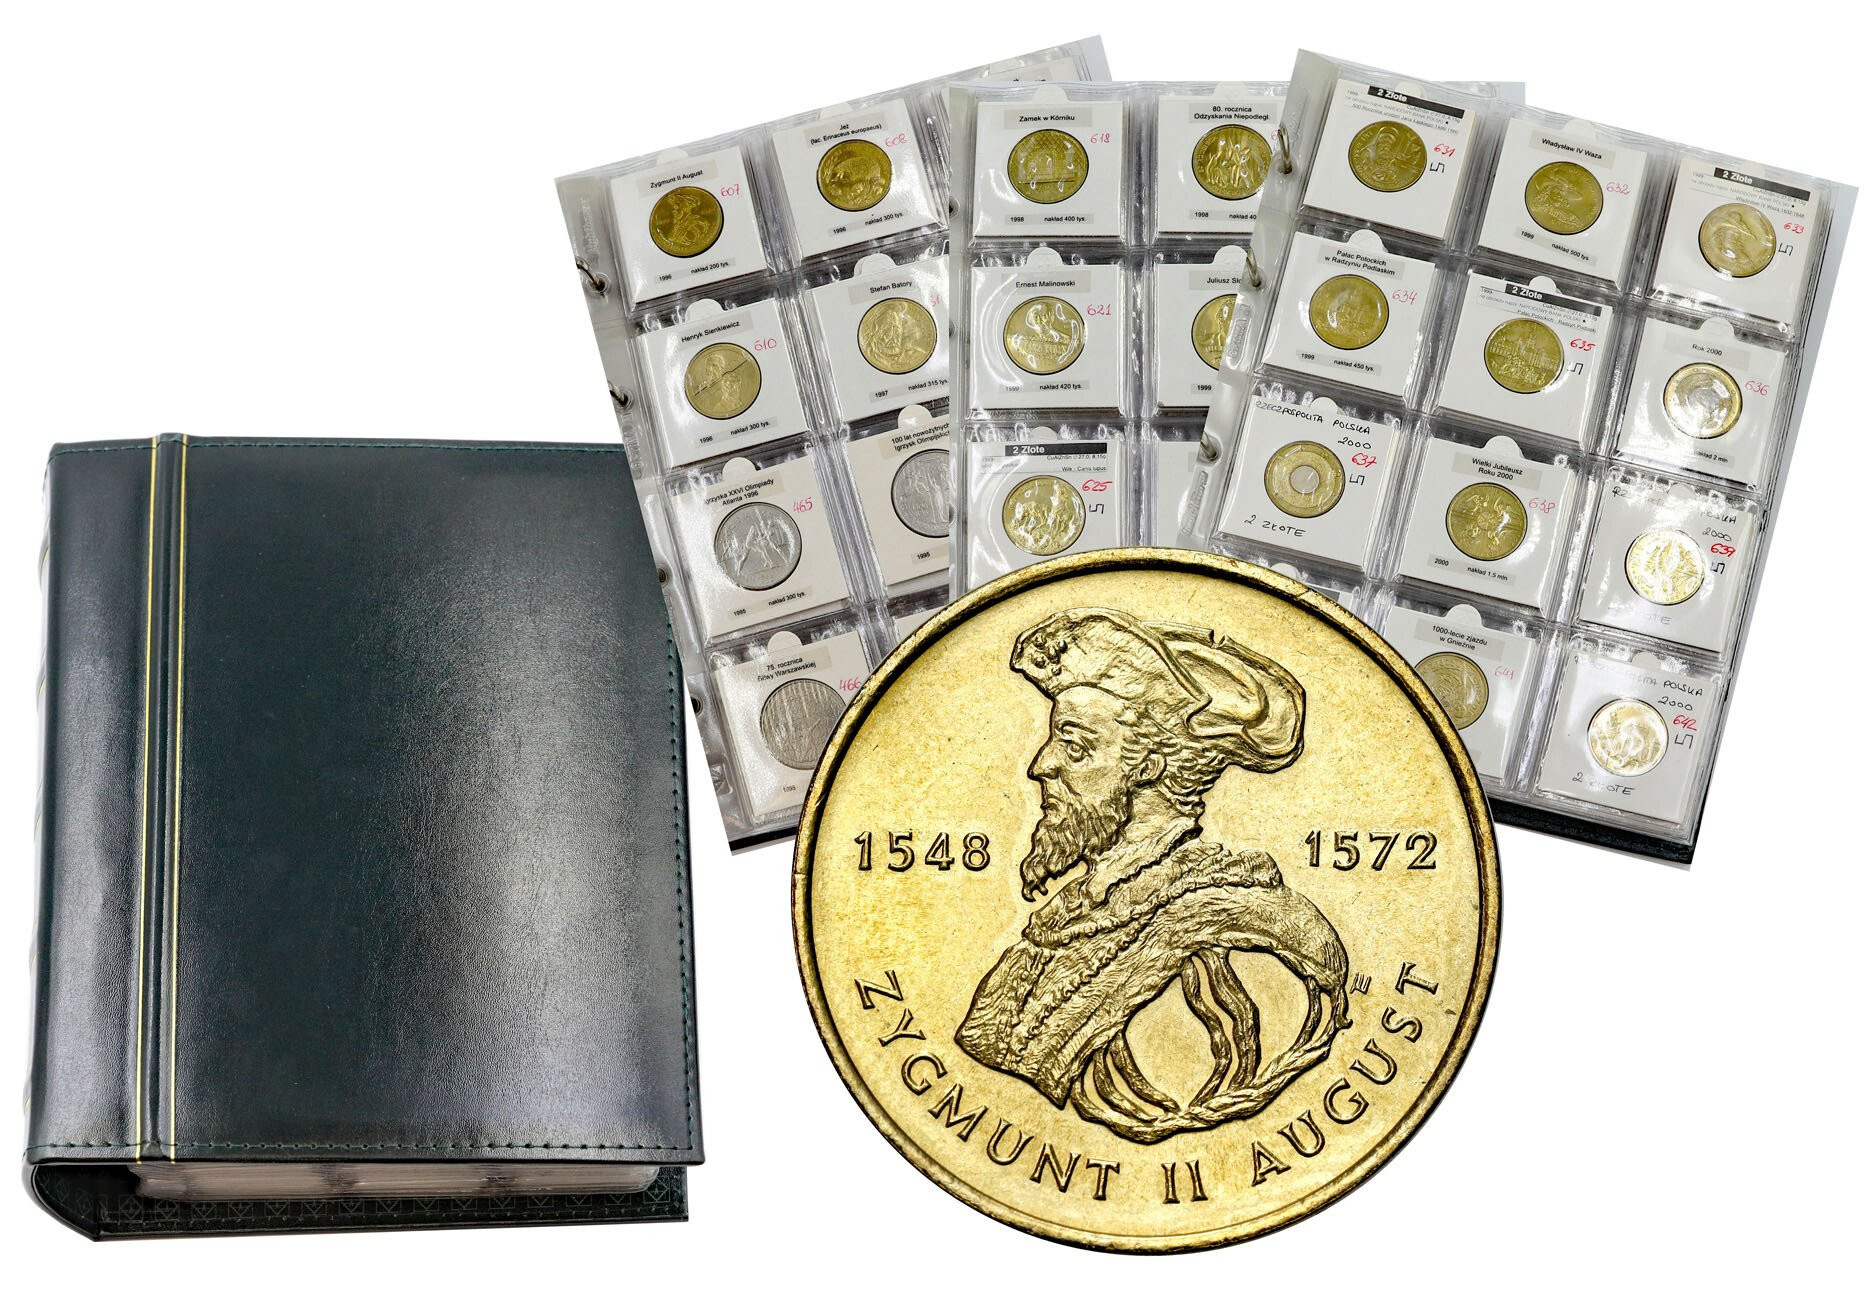 III RP. Klaser z monetami 2 złote GN 1995-2010, 210 sztuk w tym Zygmunt II August